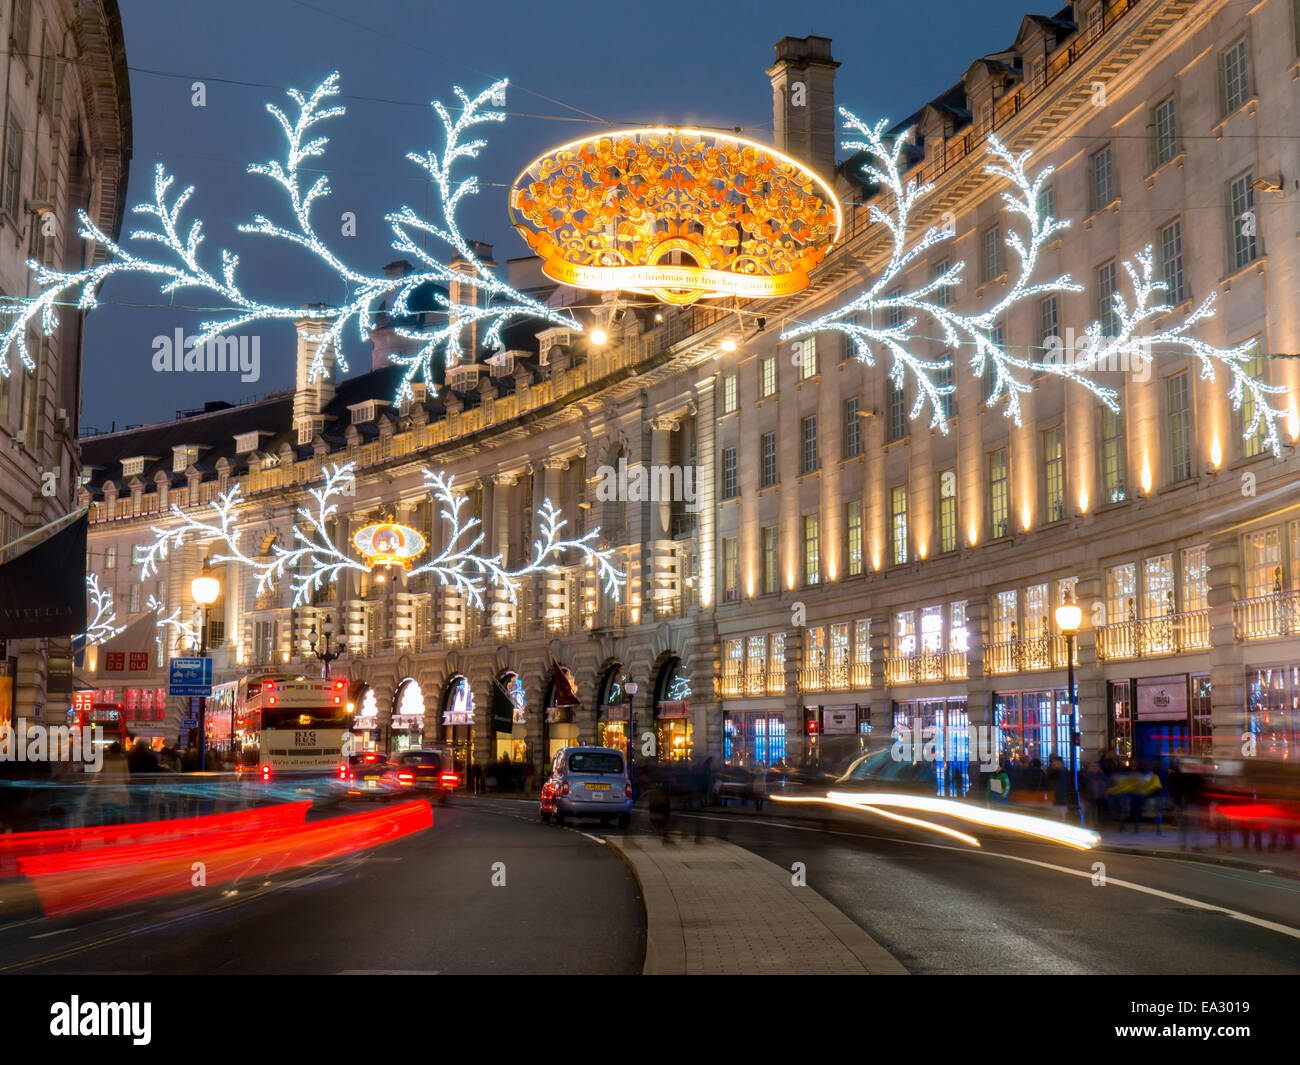 Les lumières de Noël, Regent Street, West End, Londres, Angleterre, Royaume-Uni, Europe Banque D'Images